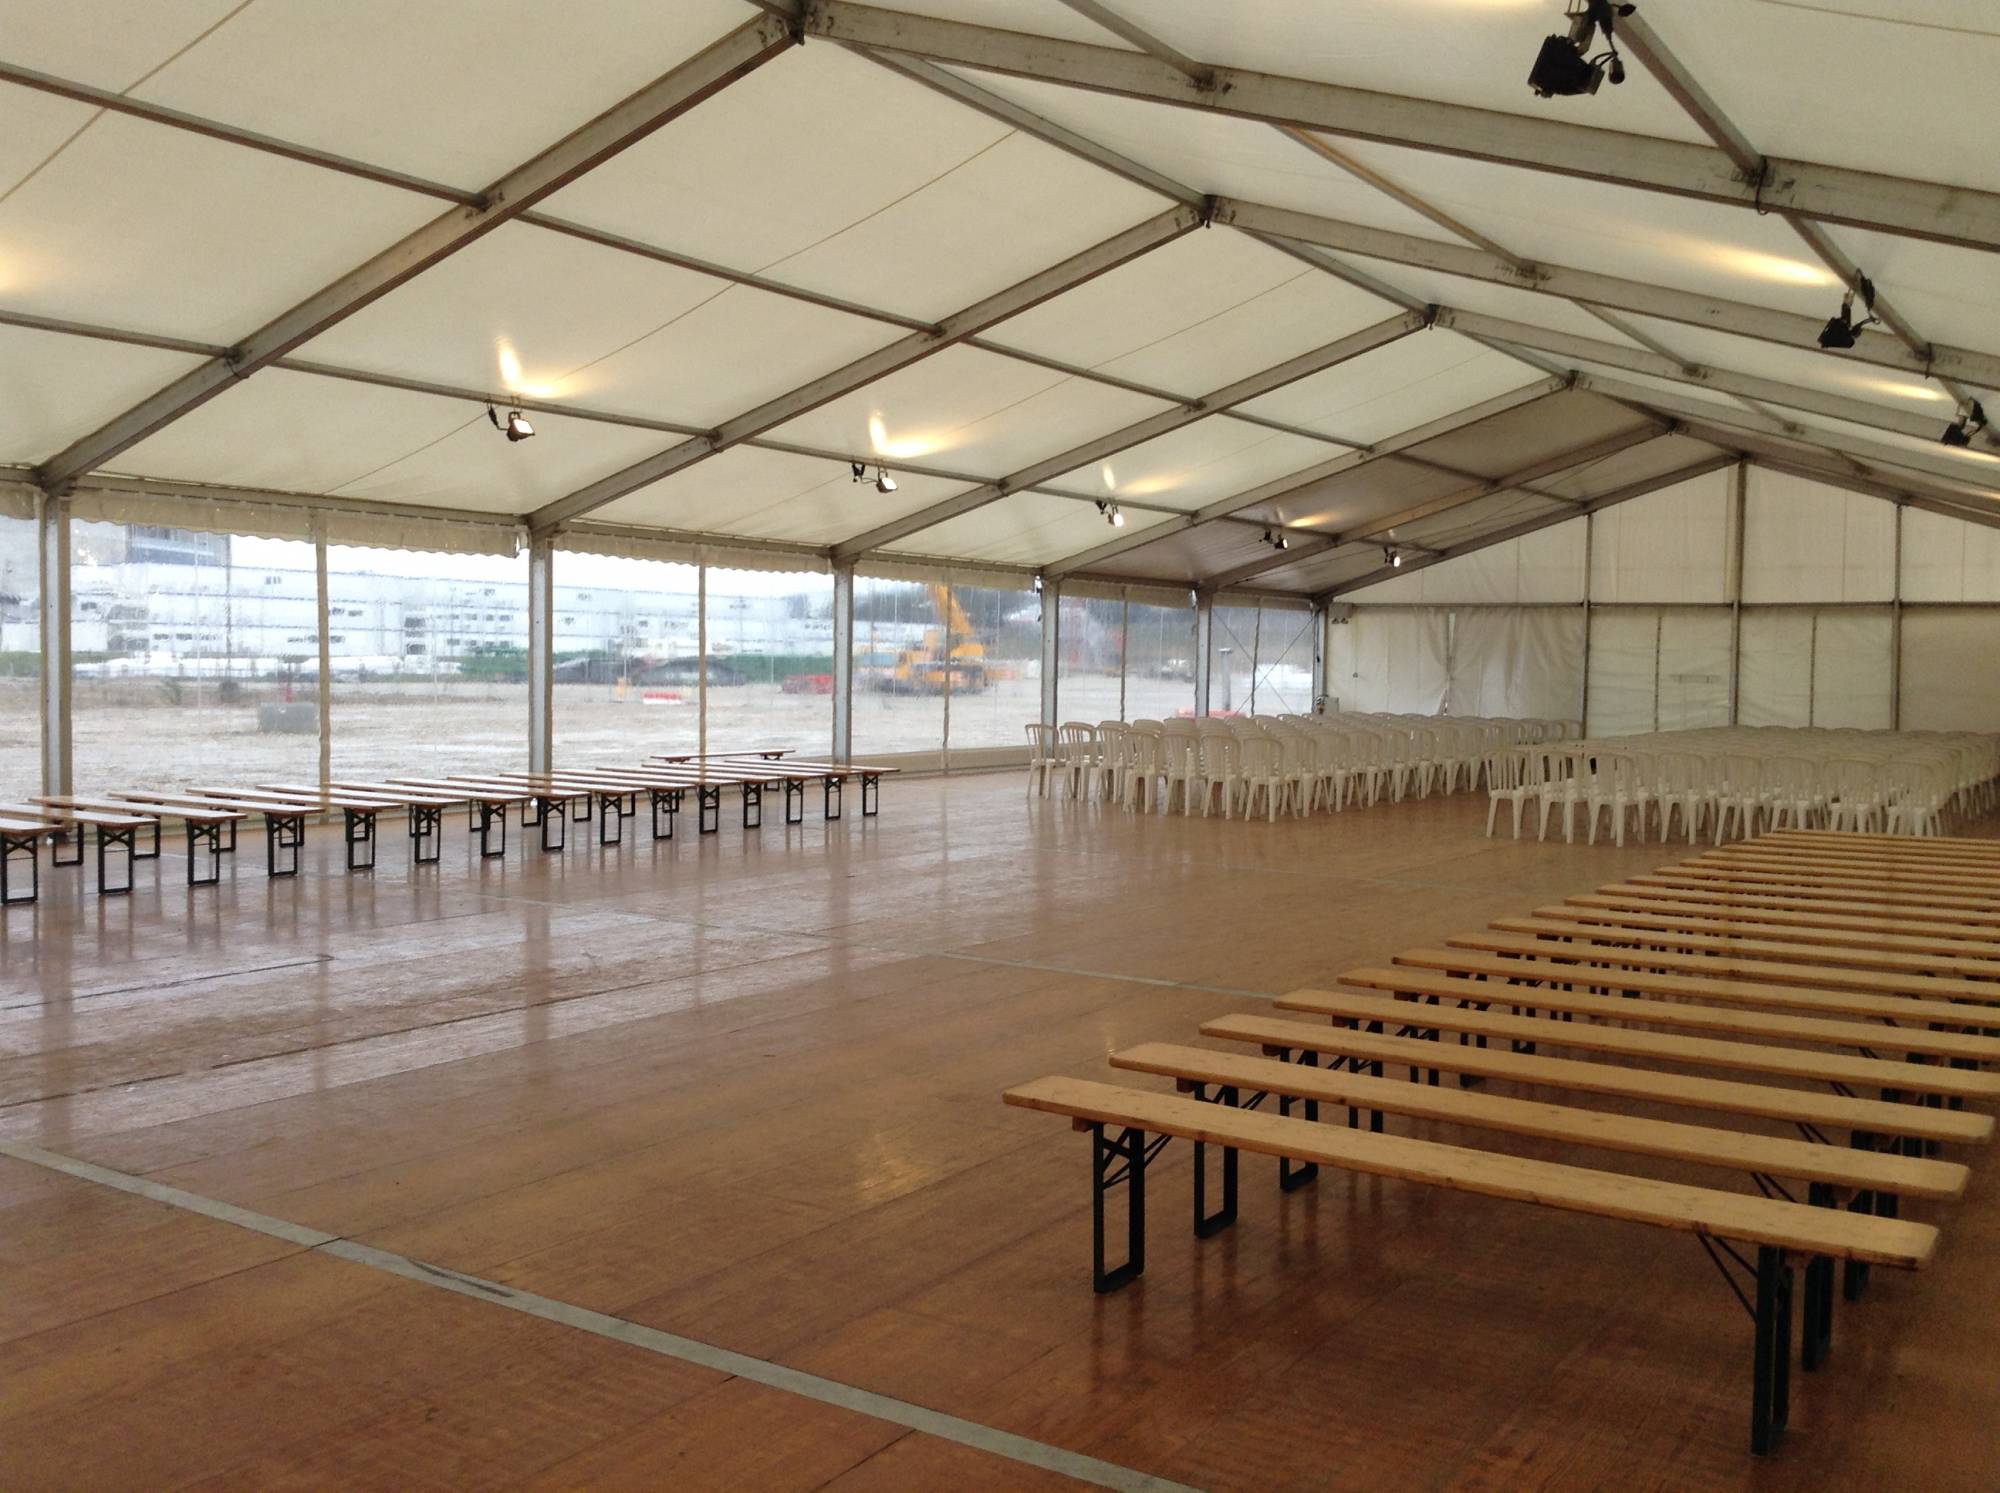 Location de tente événementielle avec bâche opaque pour une conférence de presse à Lyon